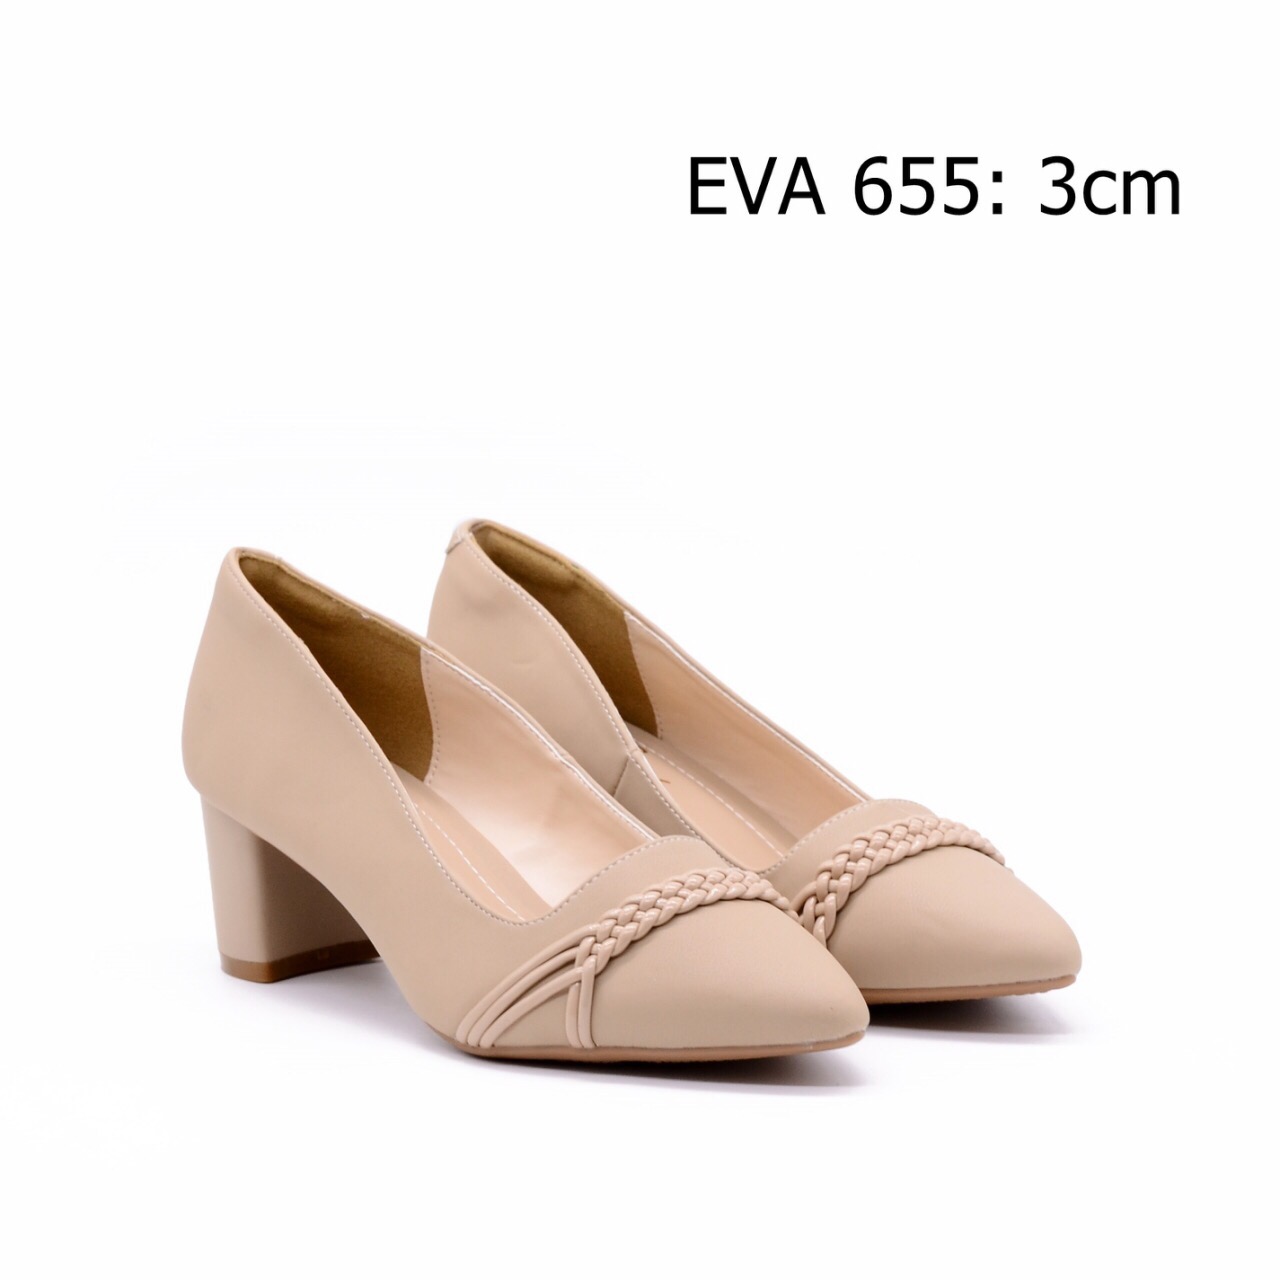 Giày công sở EVA655 thiết kế gót vuông phối họa tiết bắt mắt, thanh lịch.